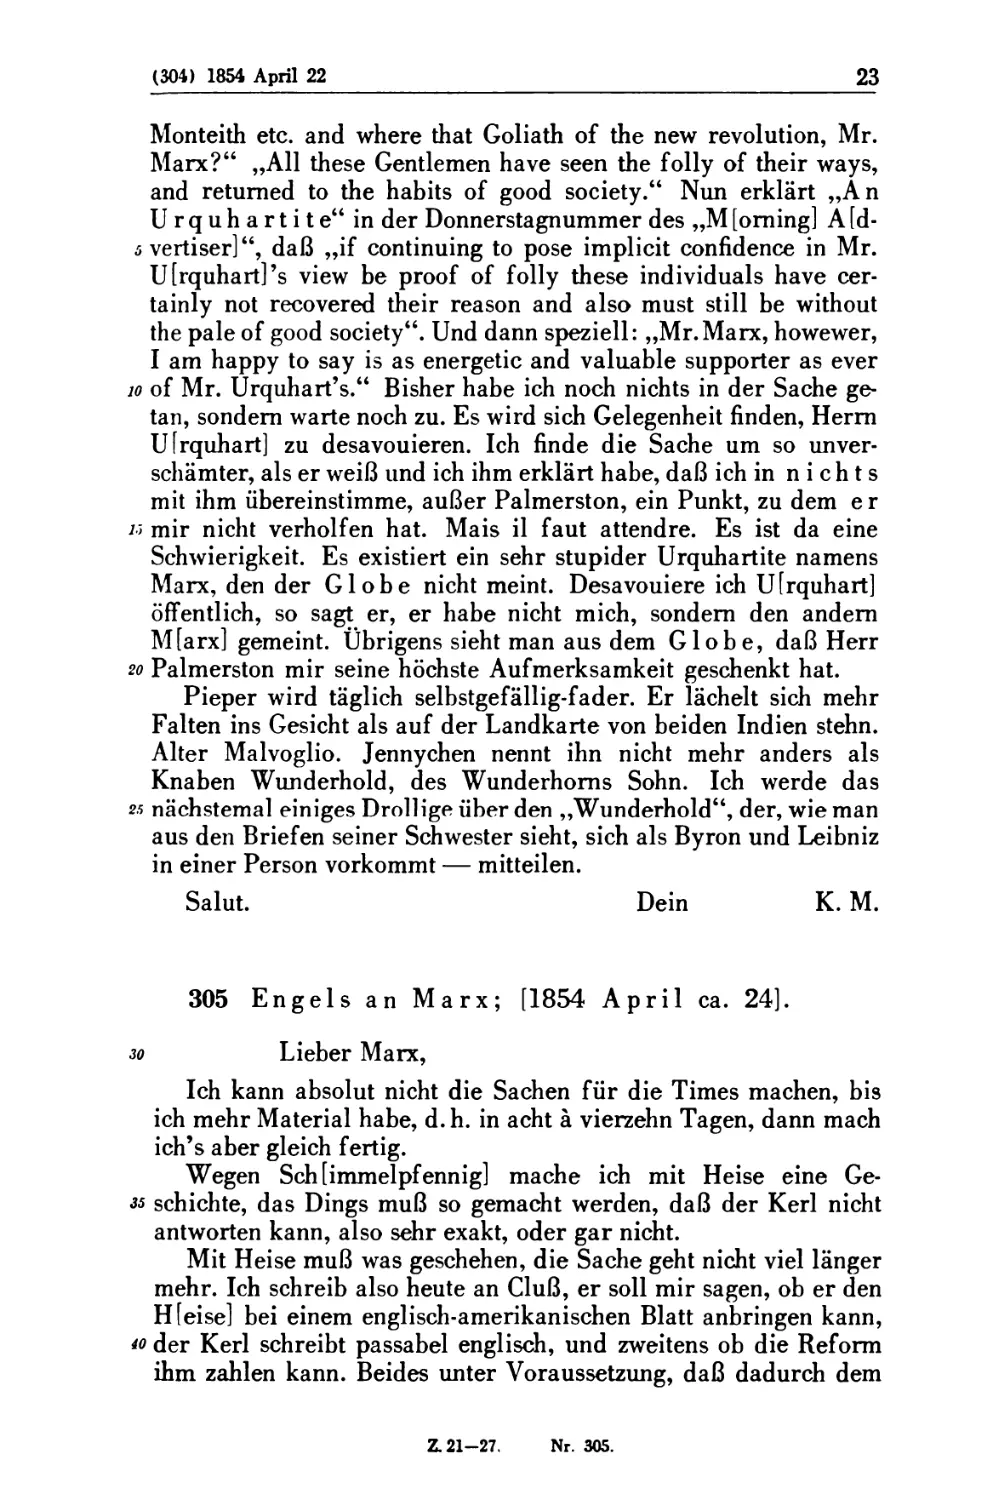 305. Engels an Marx; [1854 April ca. 24]